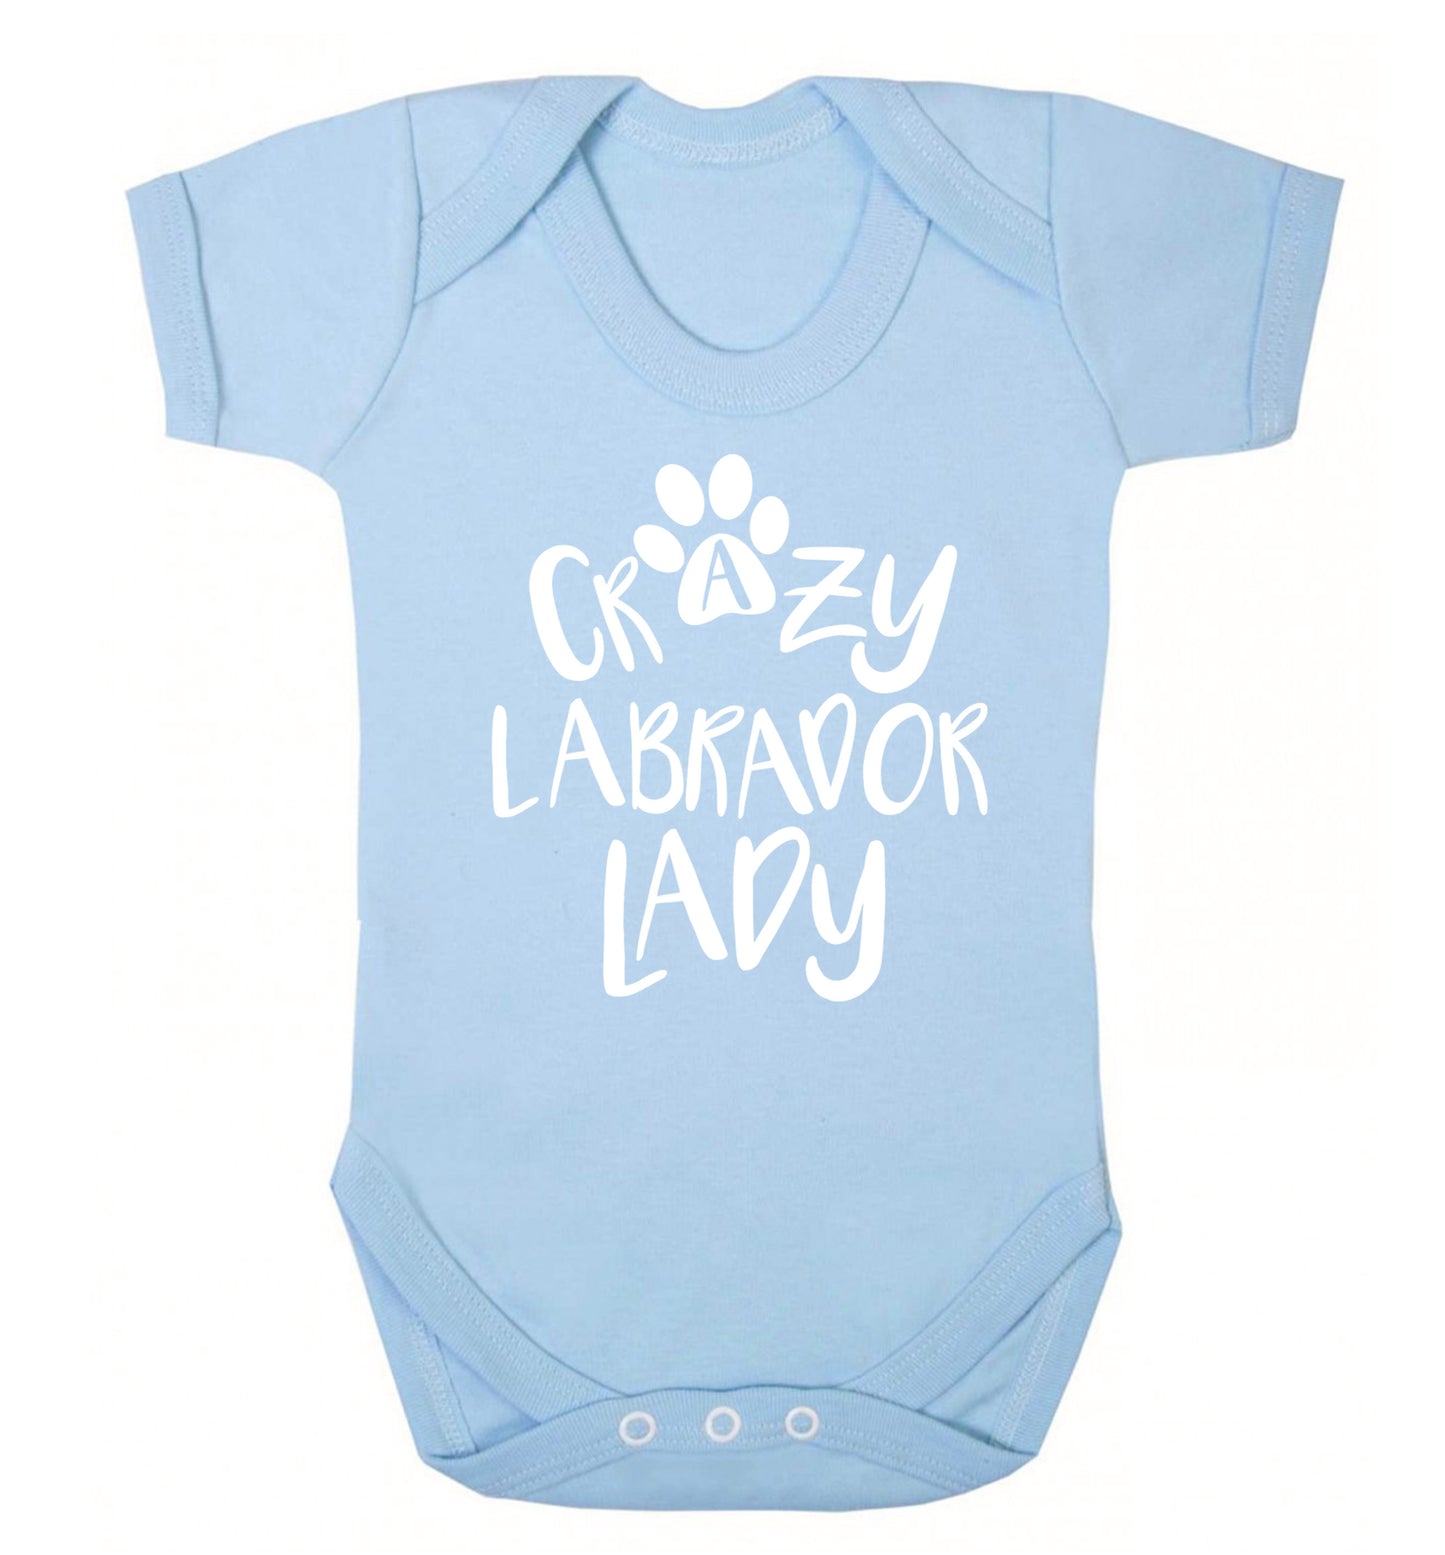 Crazy labrador lady Baby Vest pale blue 18-24 months